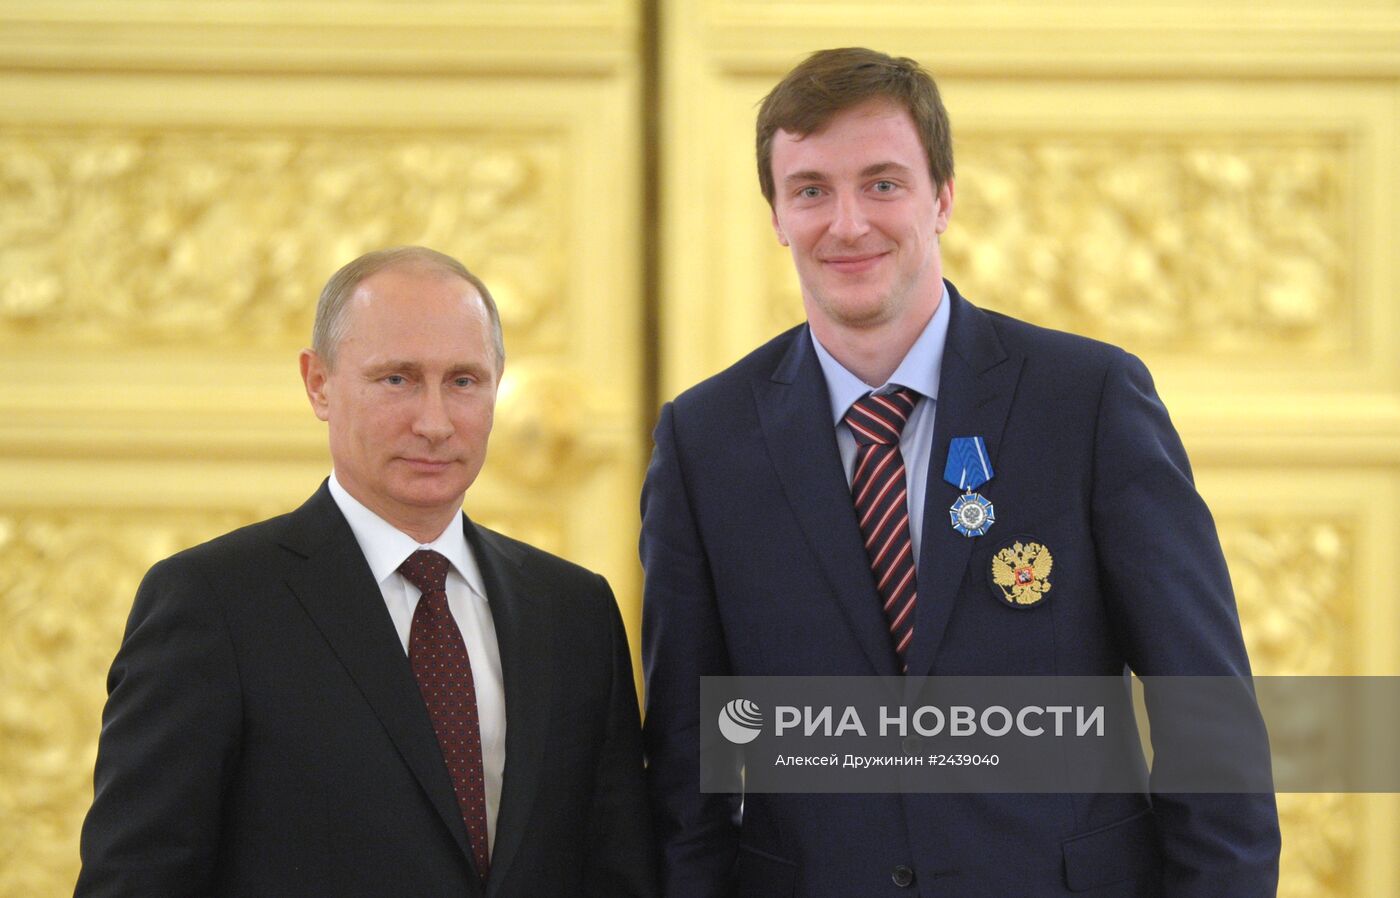 Награждение членов сборной России по хоккею в Кремле